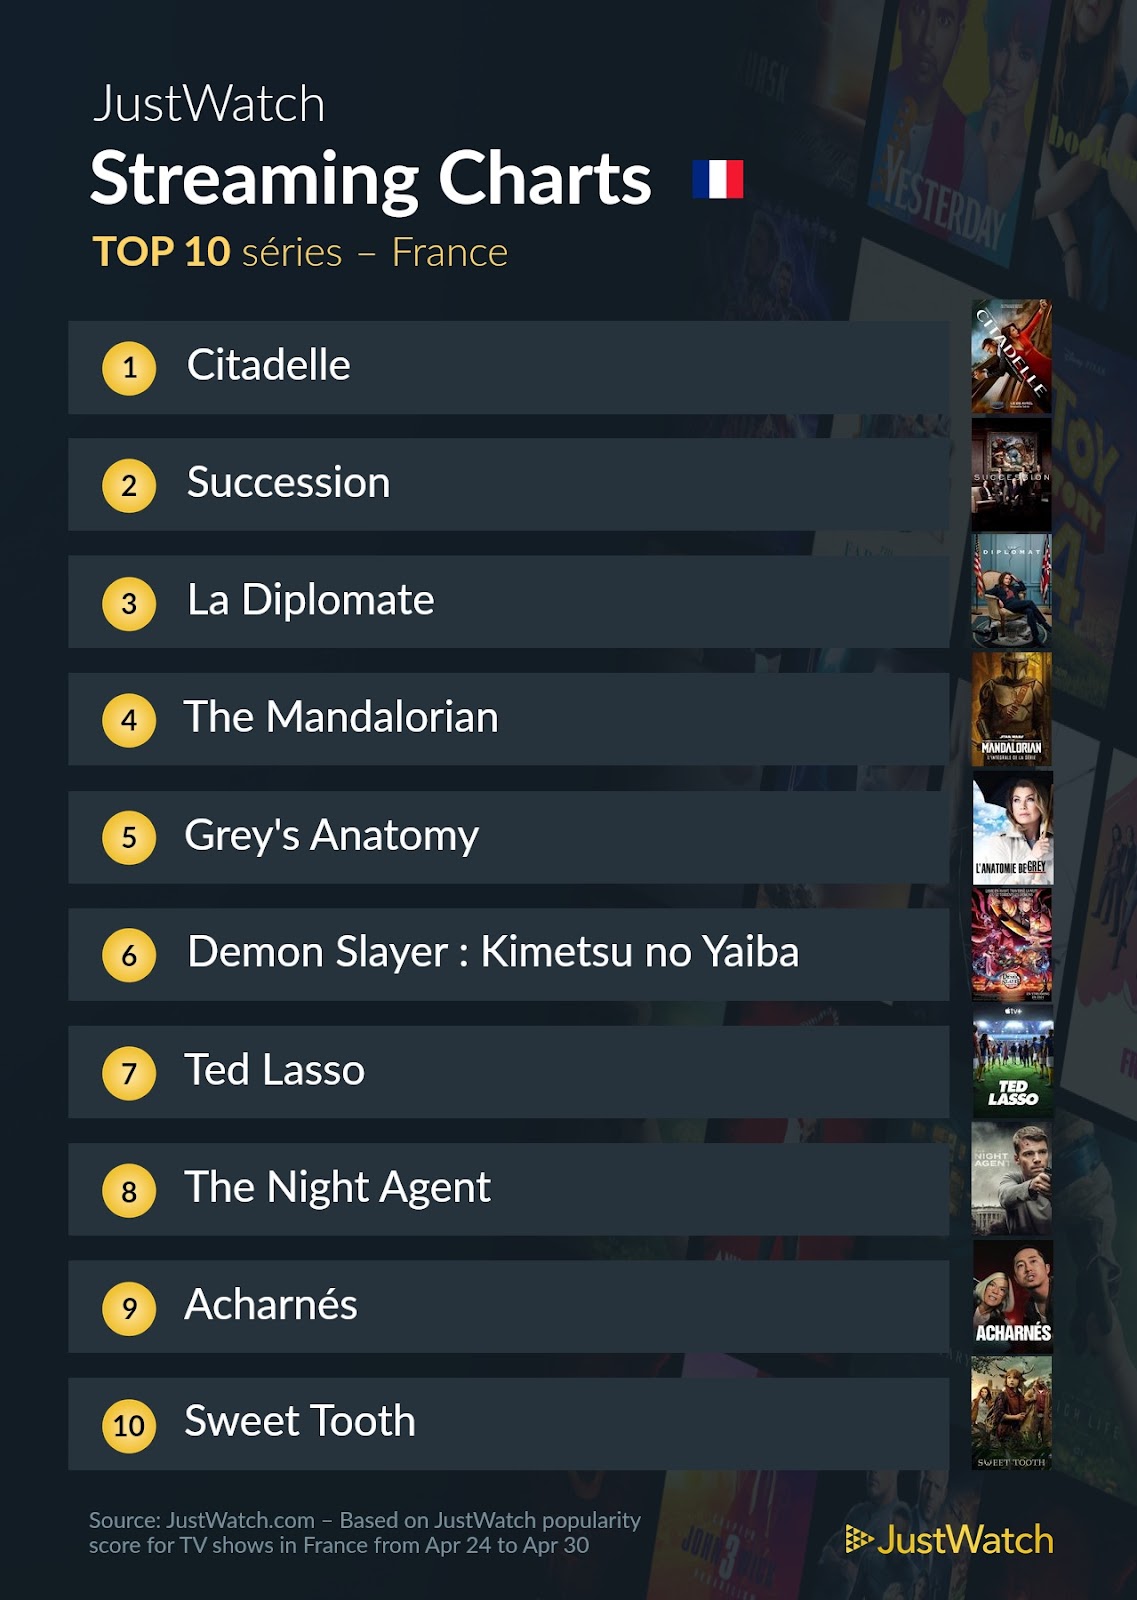 Le top streaming cinéma / séries de la semaine: "AKA" et "Citadelle" au top !